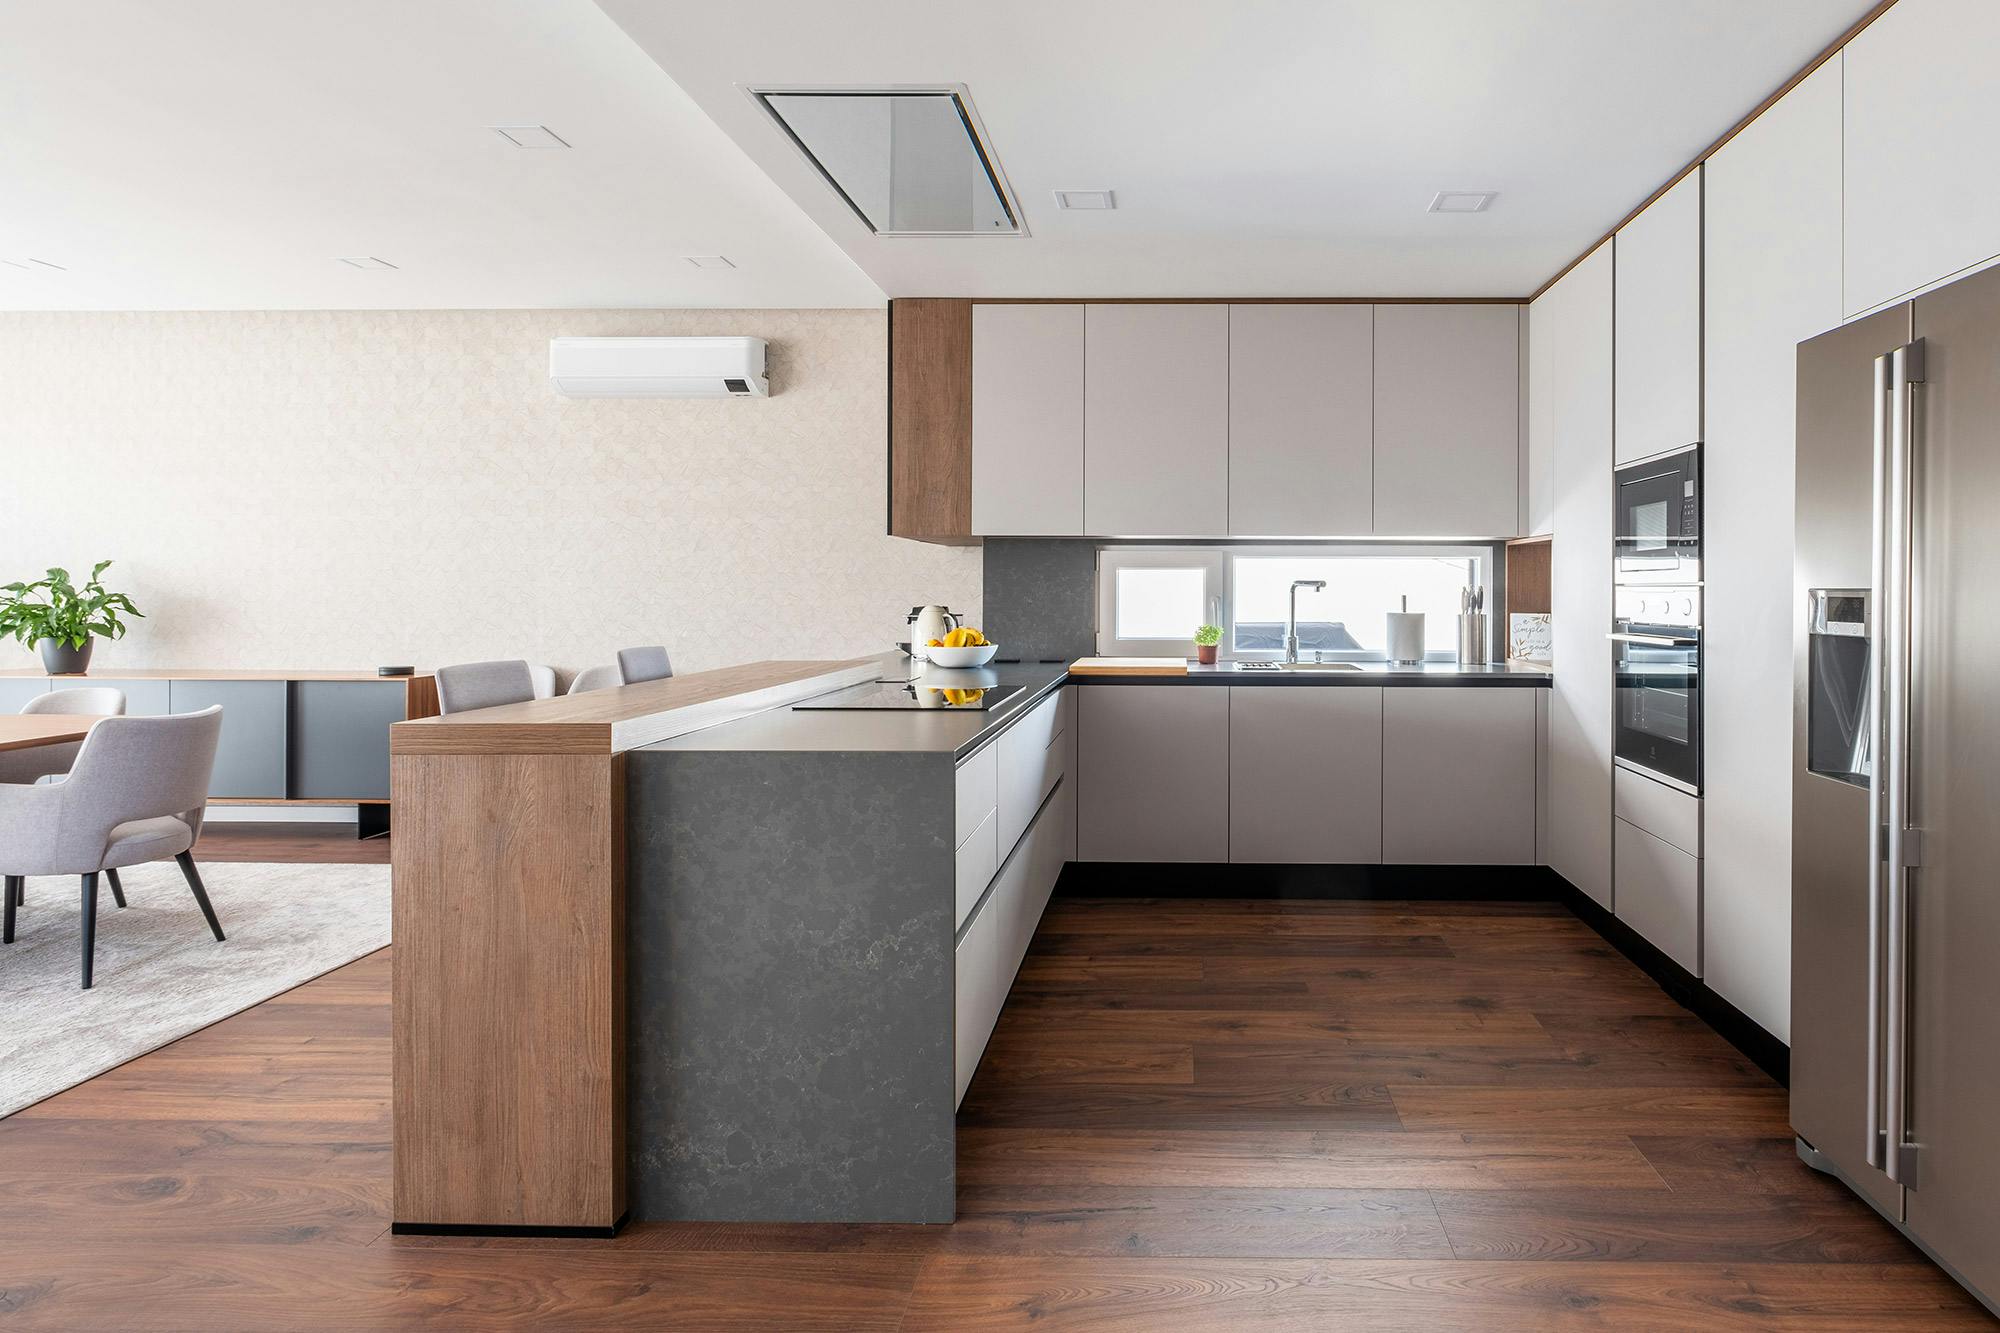 Numero immagine 43 della sezione corrente di Professional features for a domestic kitchen worktop di Cosentino Italia